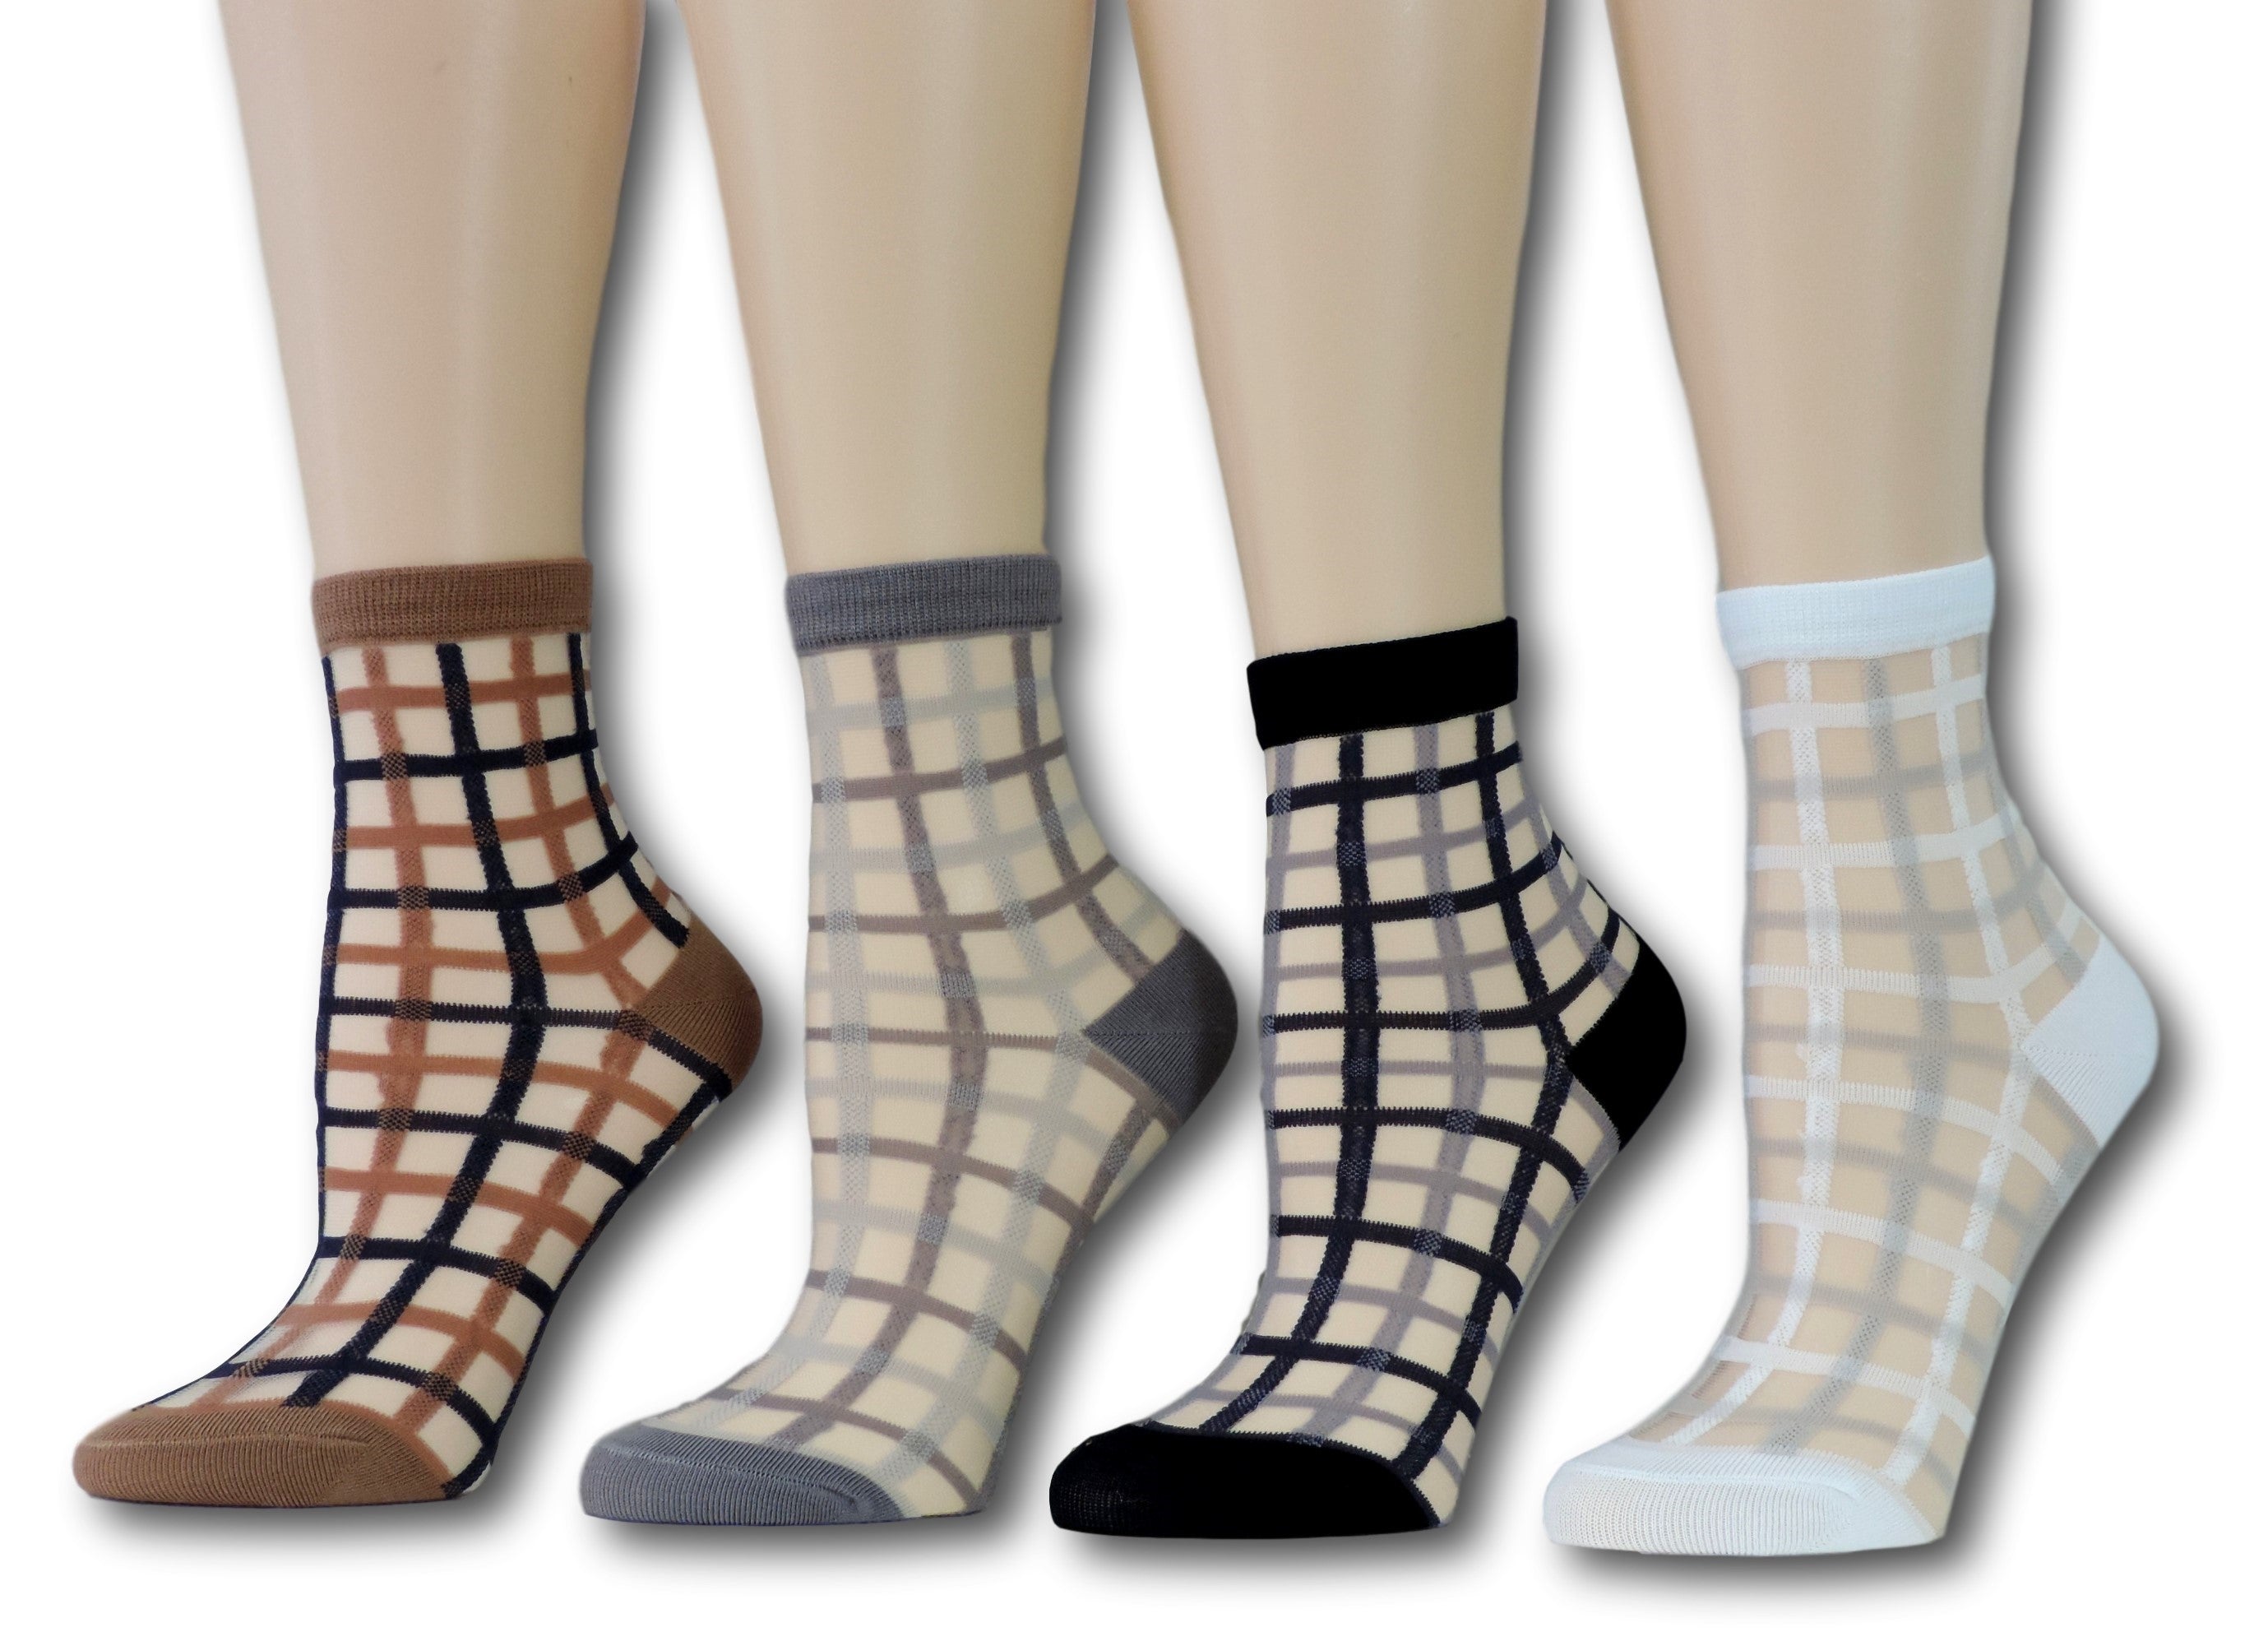 Vintage Sheer Socks (Pack of 4 Pairs)